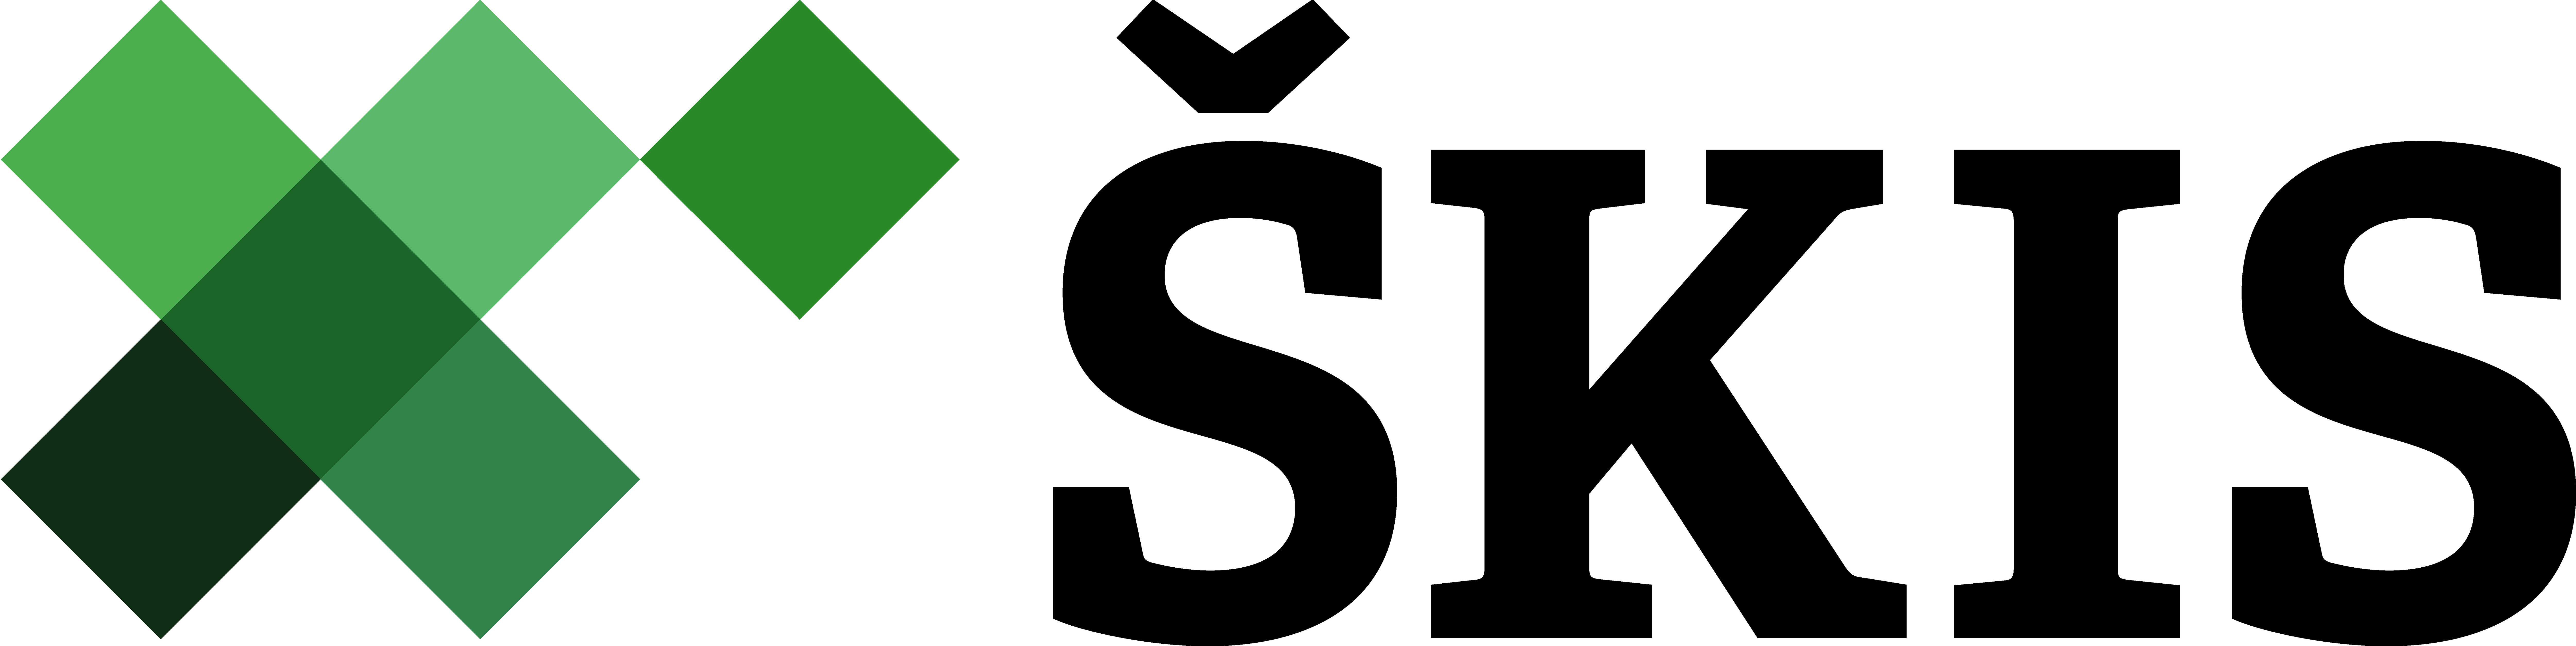 skis-logo